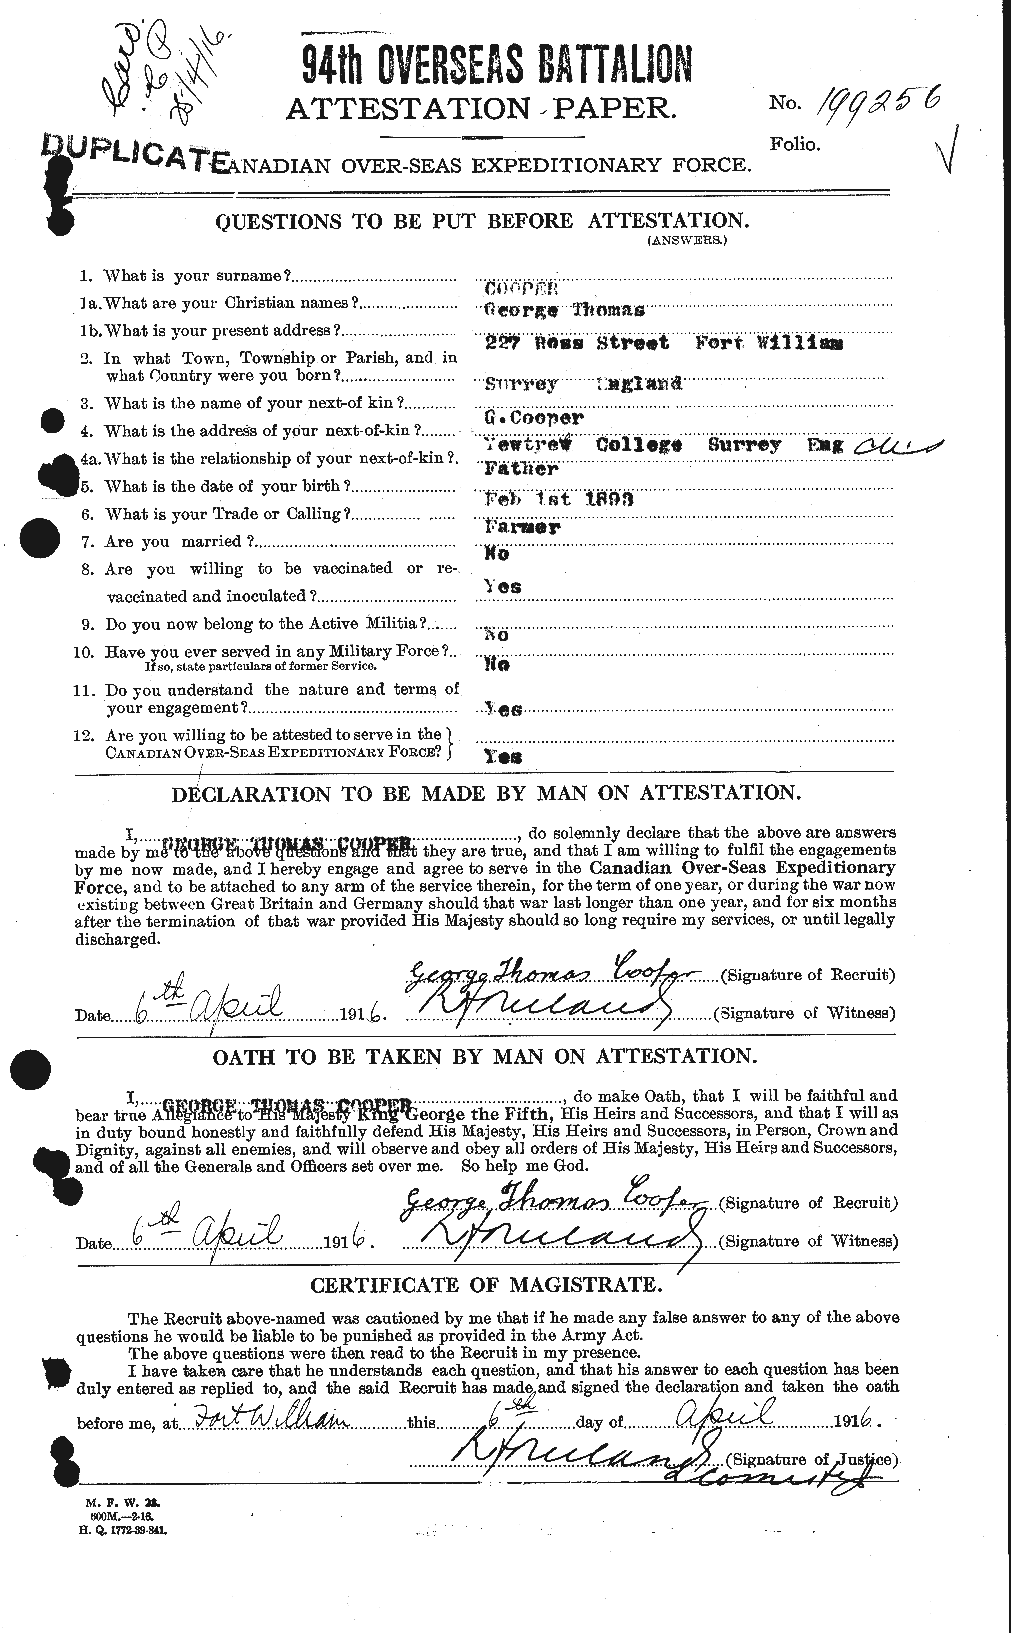 Dossiers du Personnel de la Première Guerre mondiale - CEC 057540a